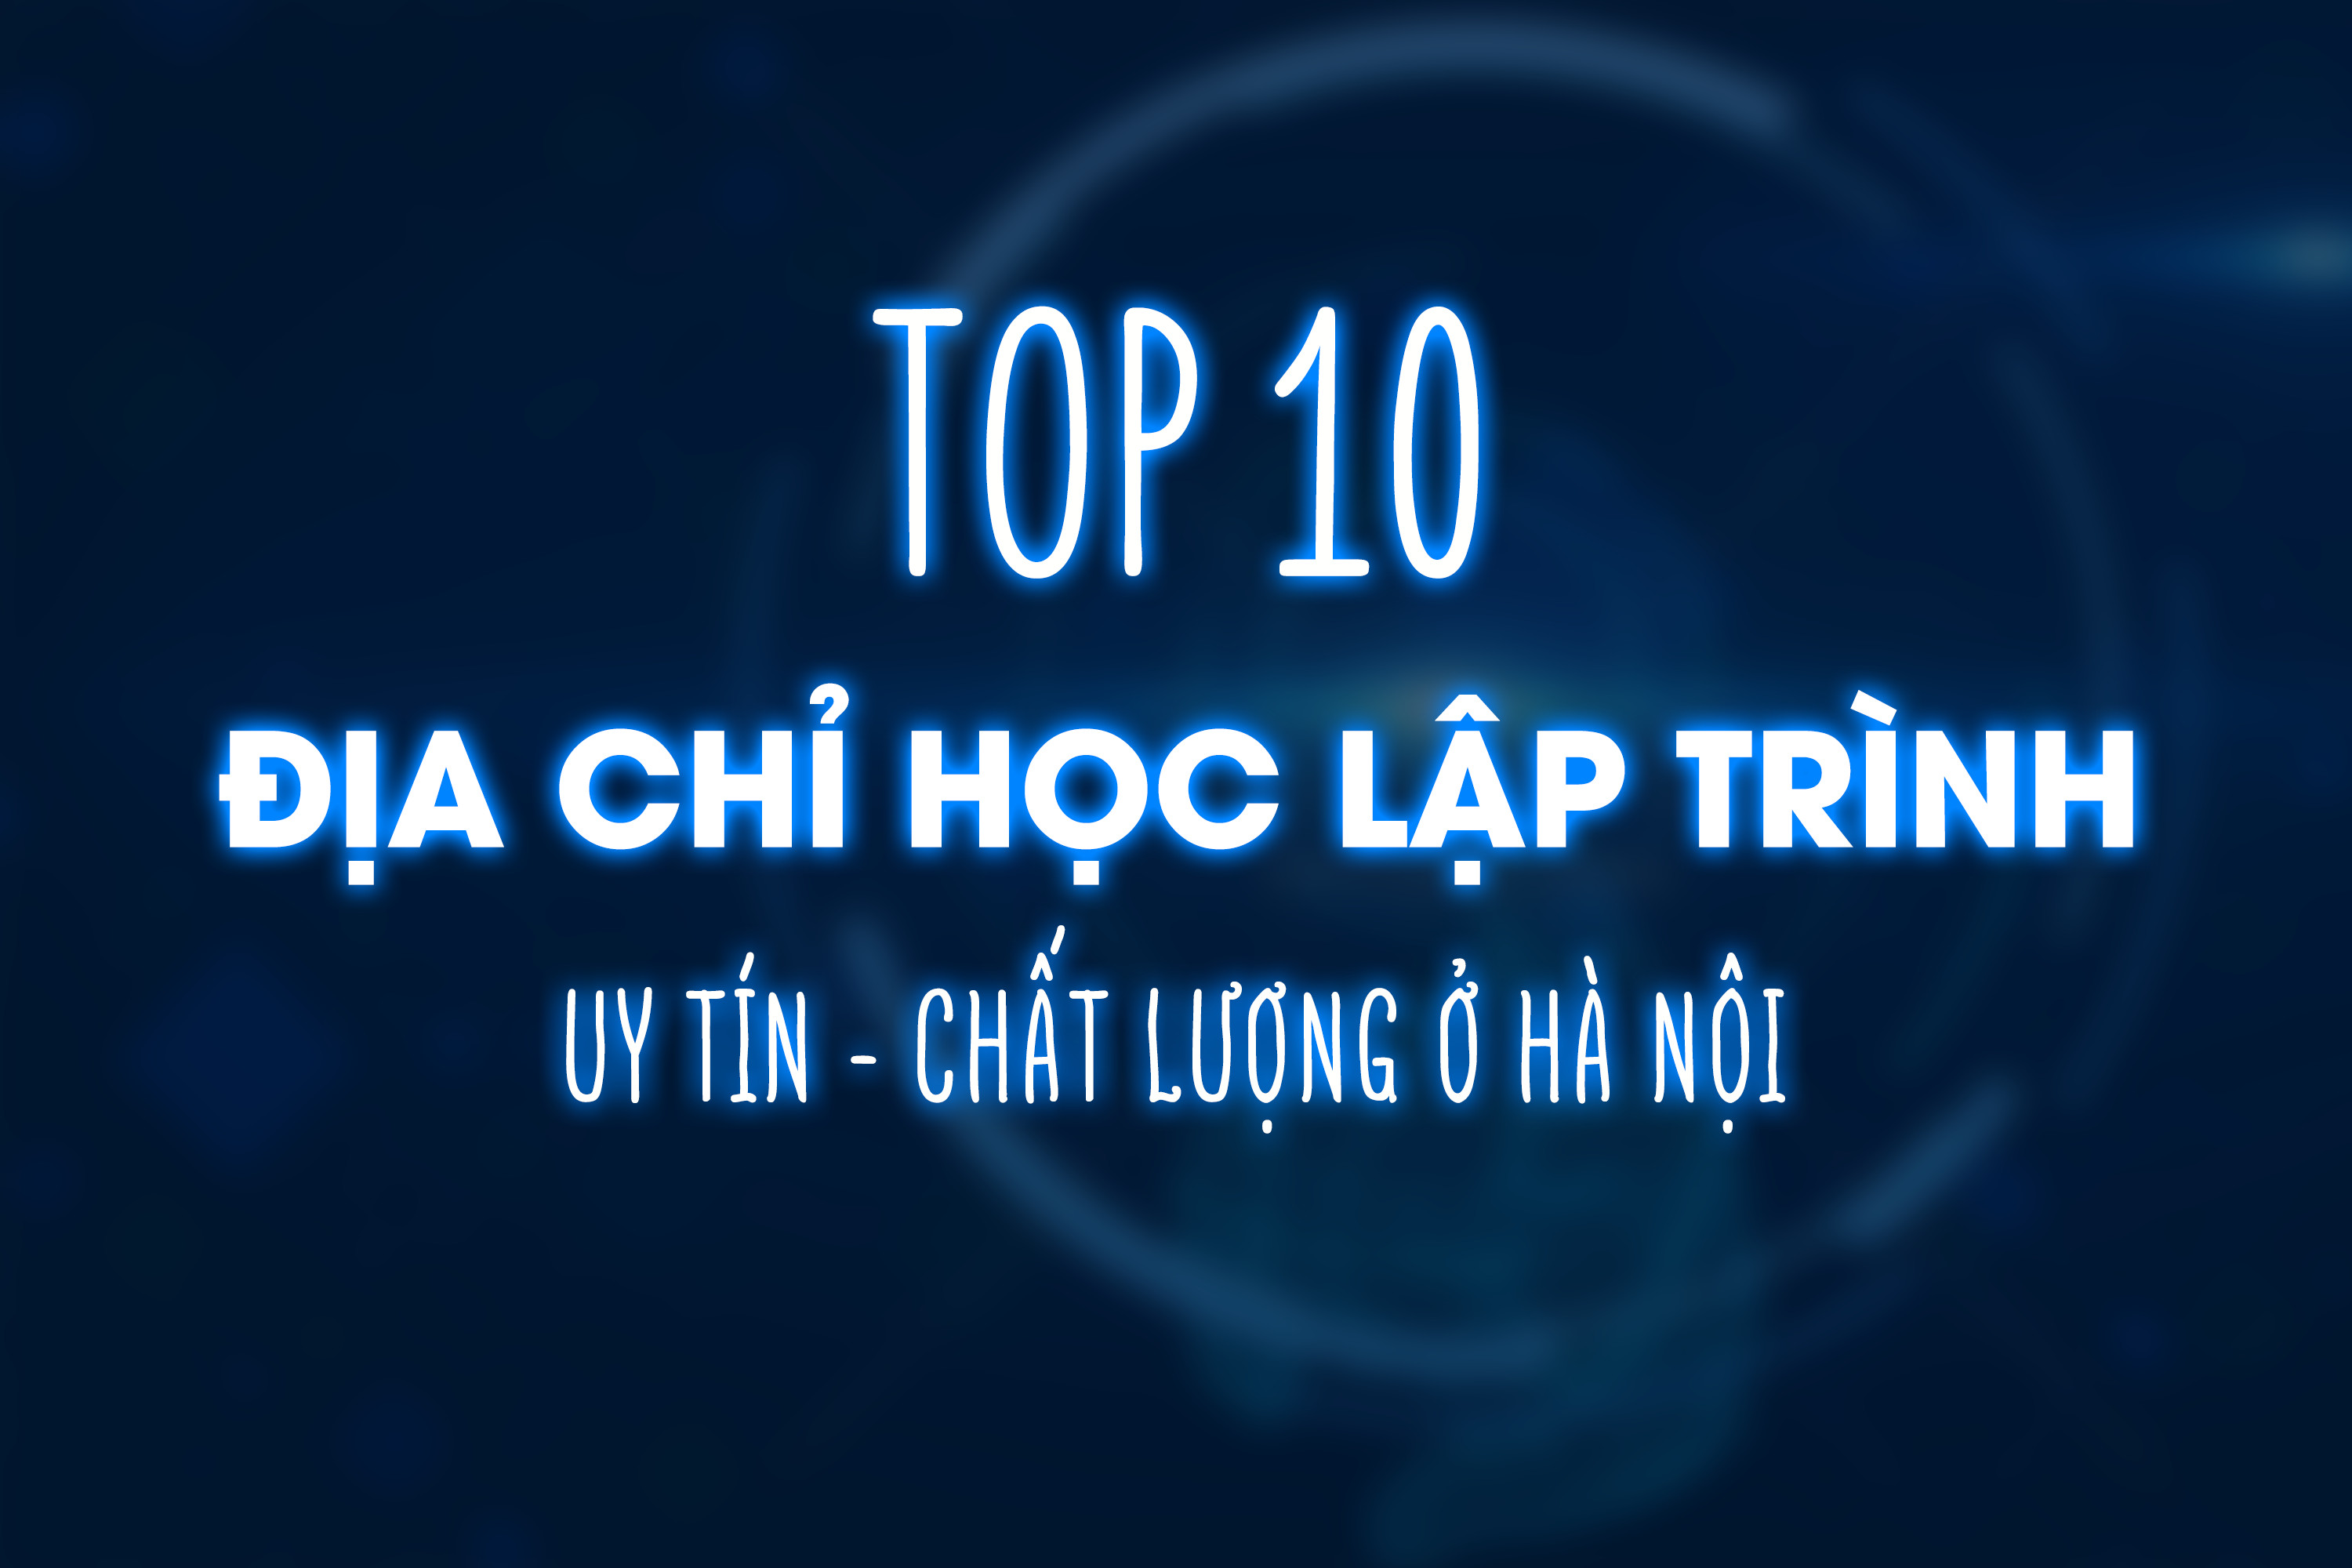 Top 10 địa chỉ học lập trình uy tín, chất lượng ở Hà Nội